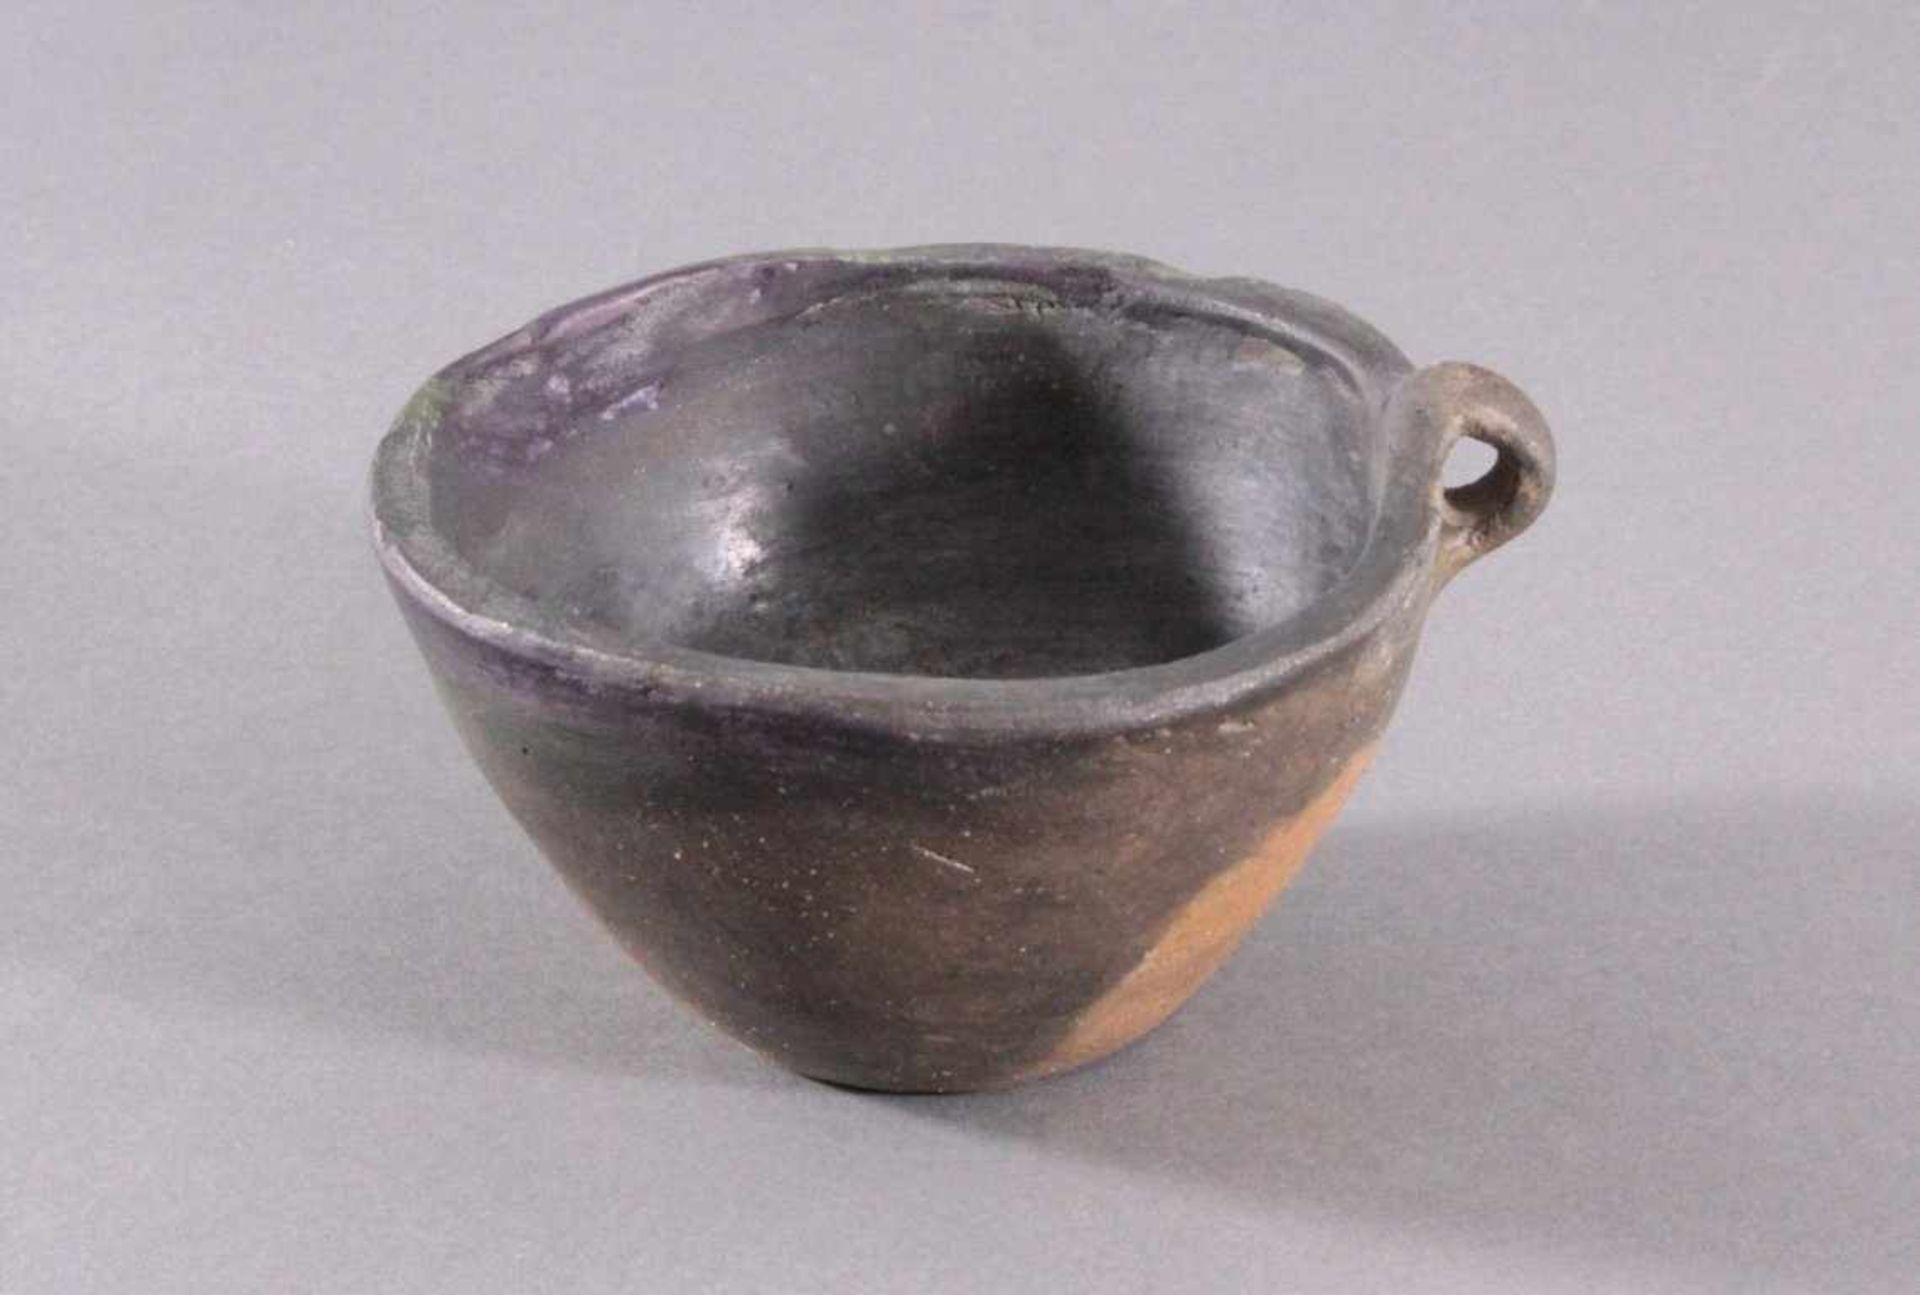 Henkelgefäß - Lausitzer Kultur 900-500 v. Chr.Tassenförmiges Einhenkelgefäß, aus dunkelbraunem Ton, - Bild 2 aus 5